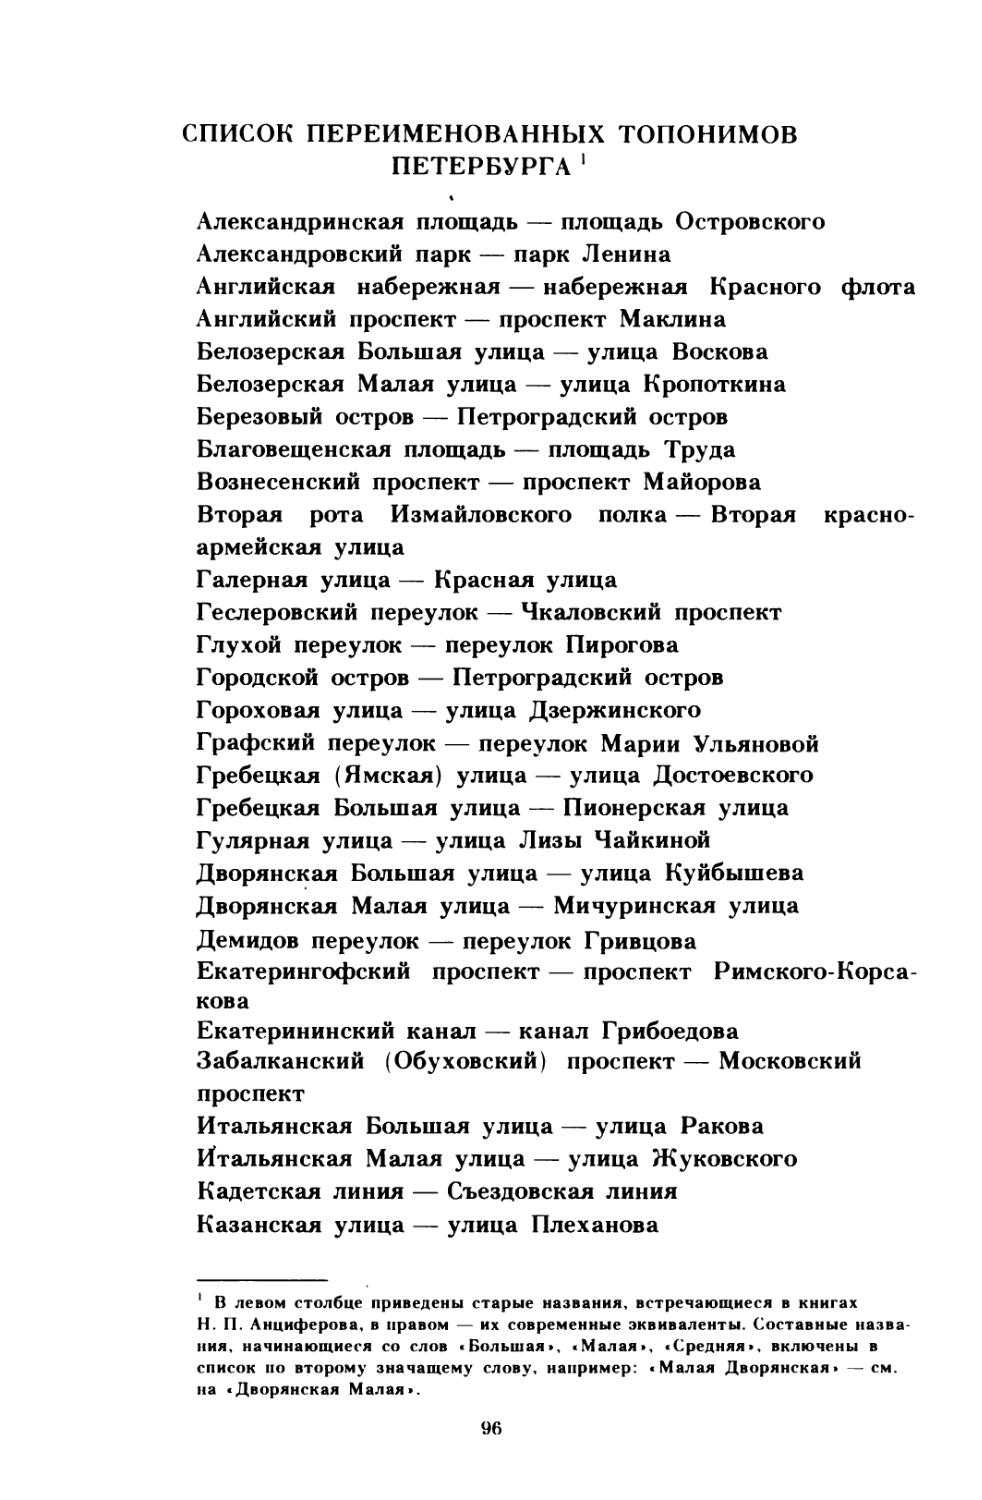 Список переименованных топонимов Петербурга